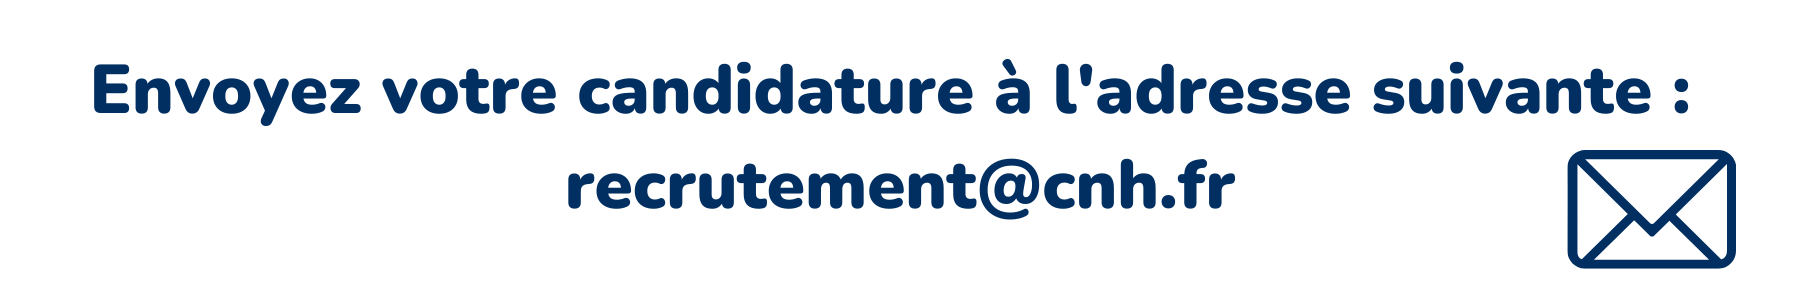 Image où il est écrit " envoyez votre candidature à l'adresse suivante : recrutement@cnh.fr"